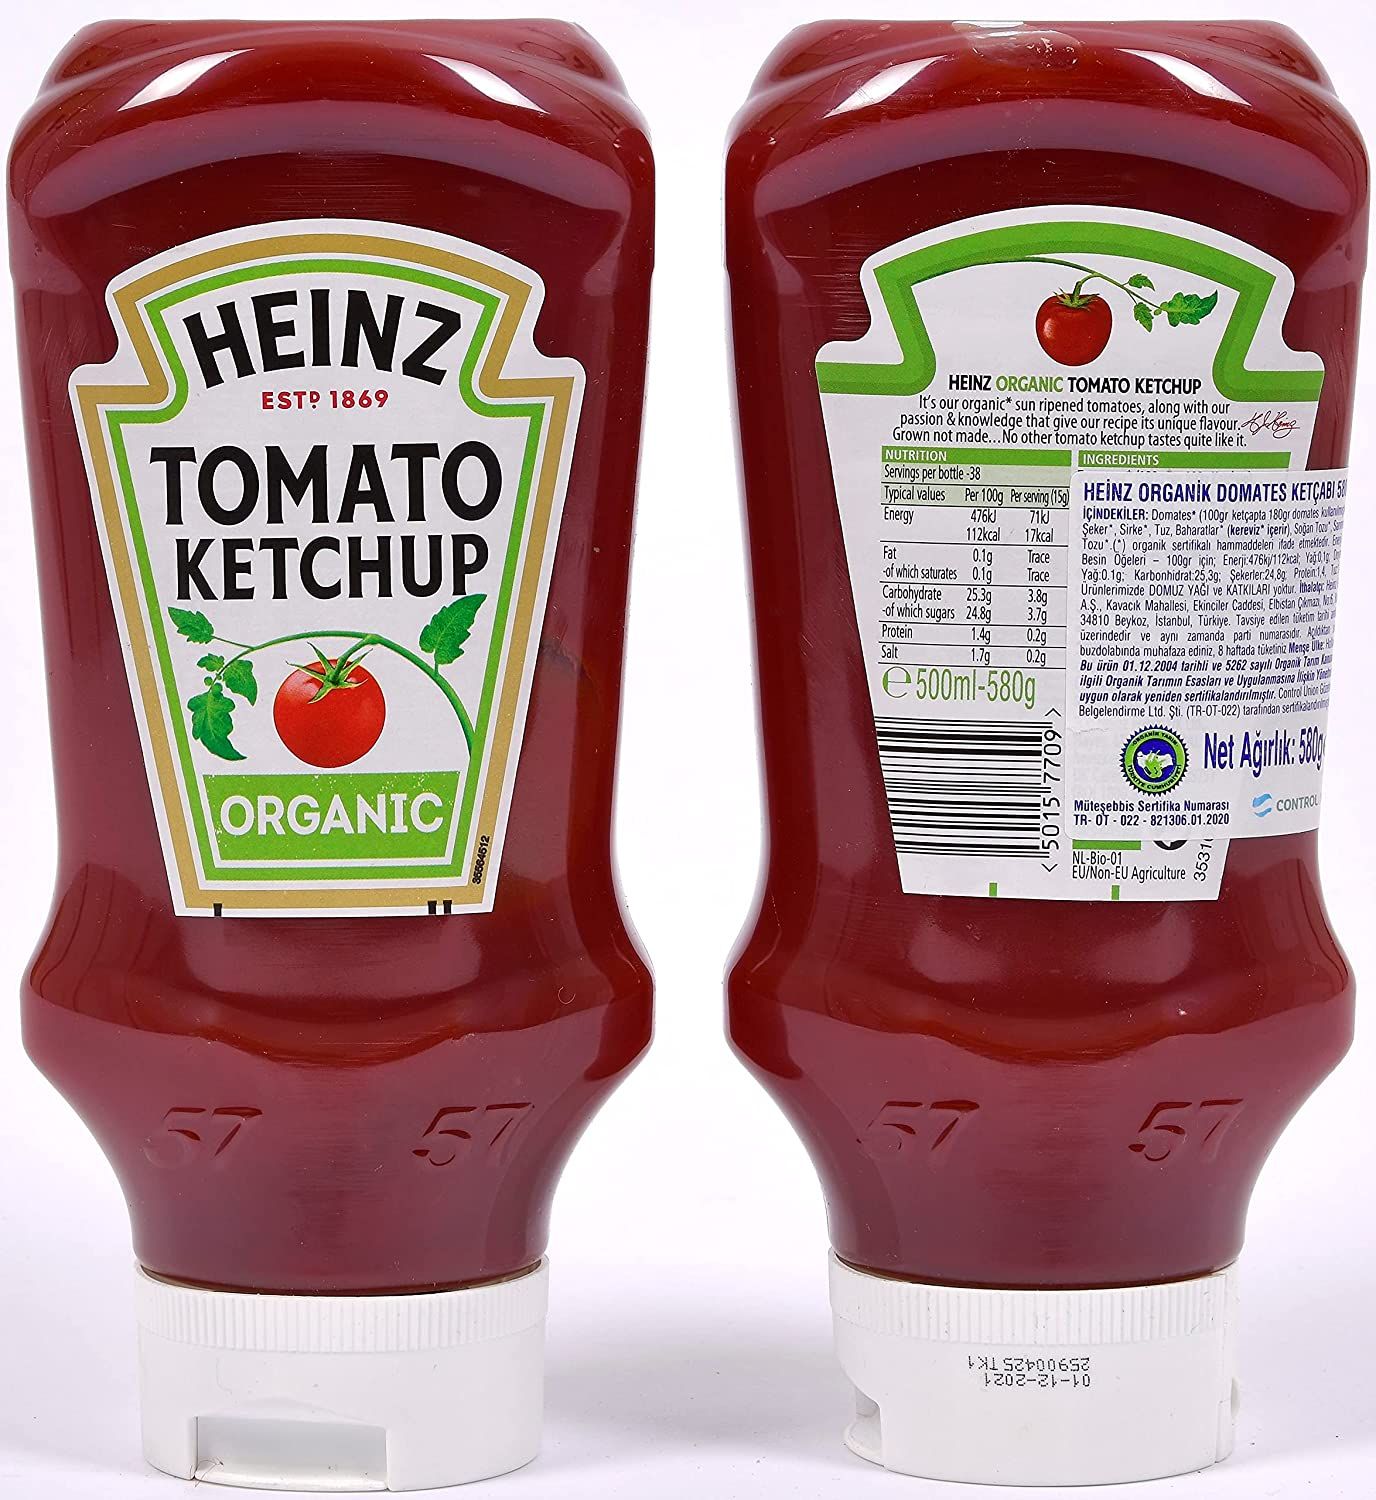 Heinz Organic Tomato Ketchup Image